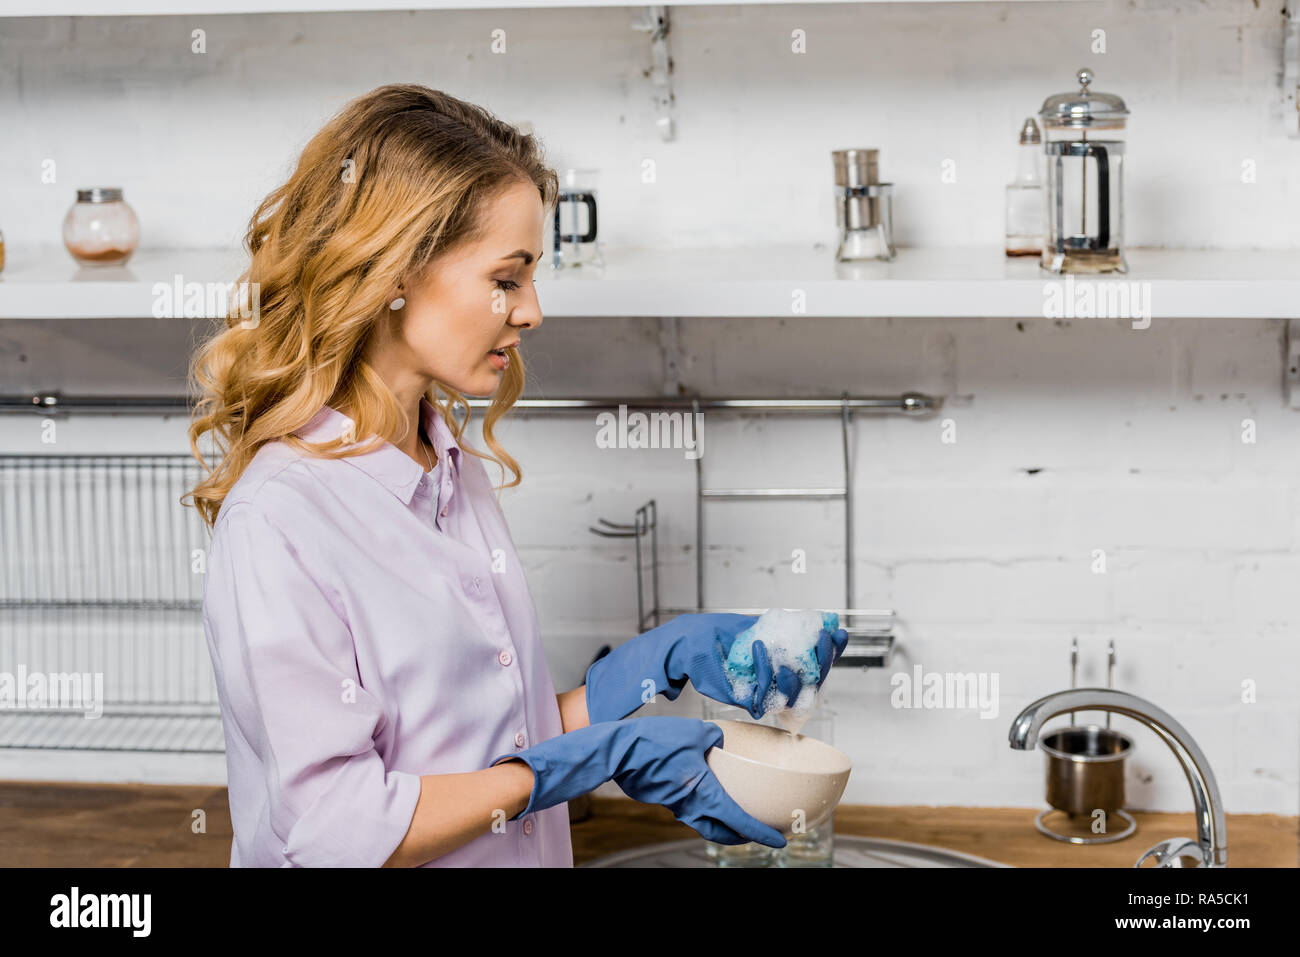 Attraktive Frau in Gummihandschuhe Geschirr in der Küche Stockfotografie -  Alamy